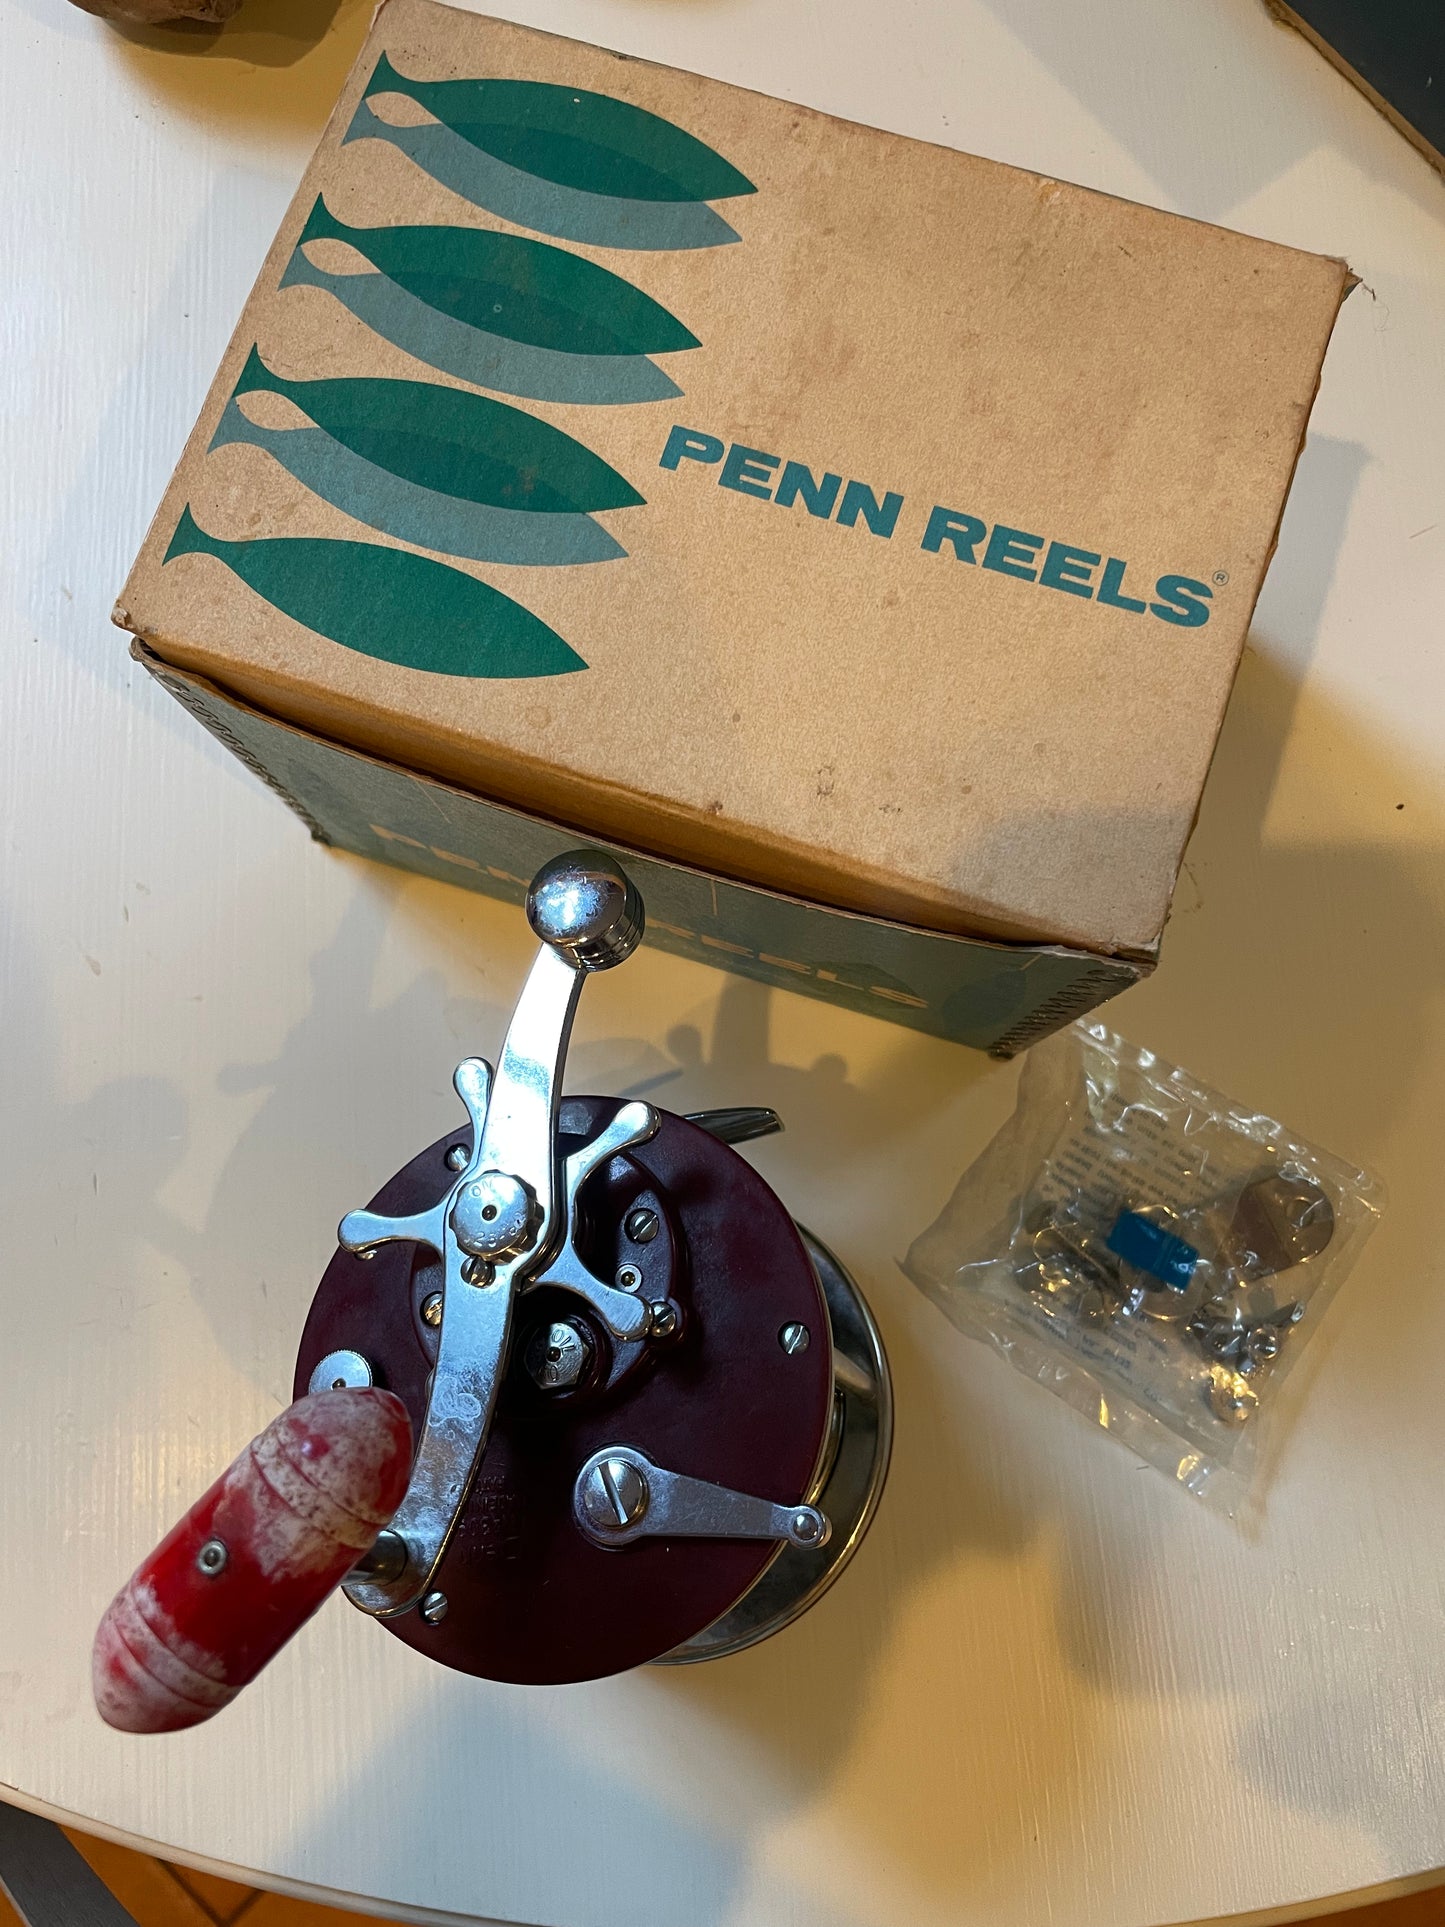 Vintage Penn Peer No. 309 Level Wind Saltwater Fishing Reel Made in USA deep sea